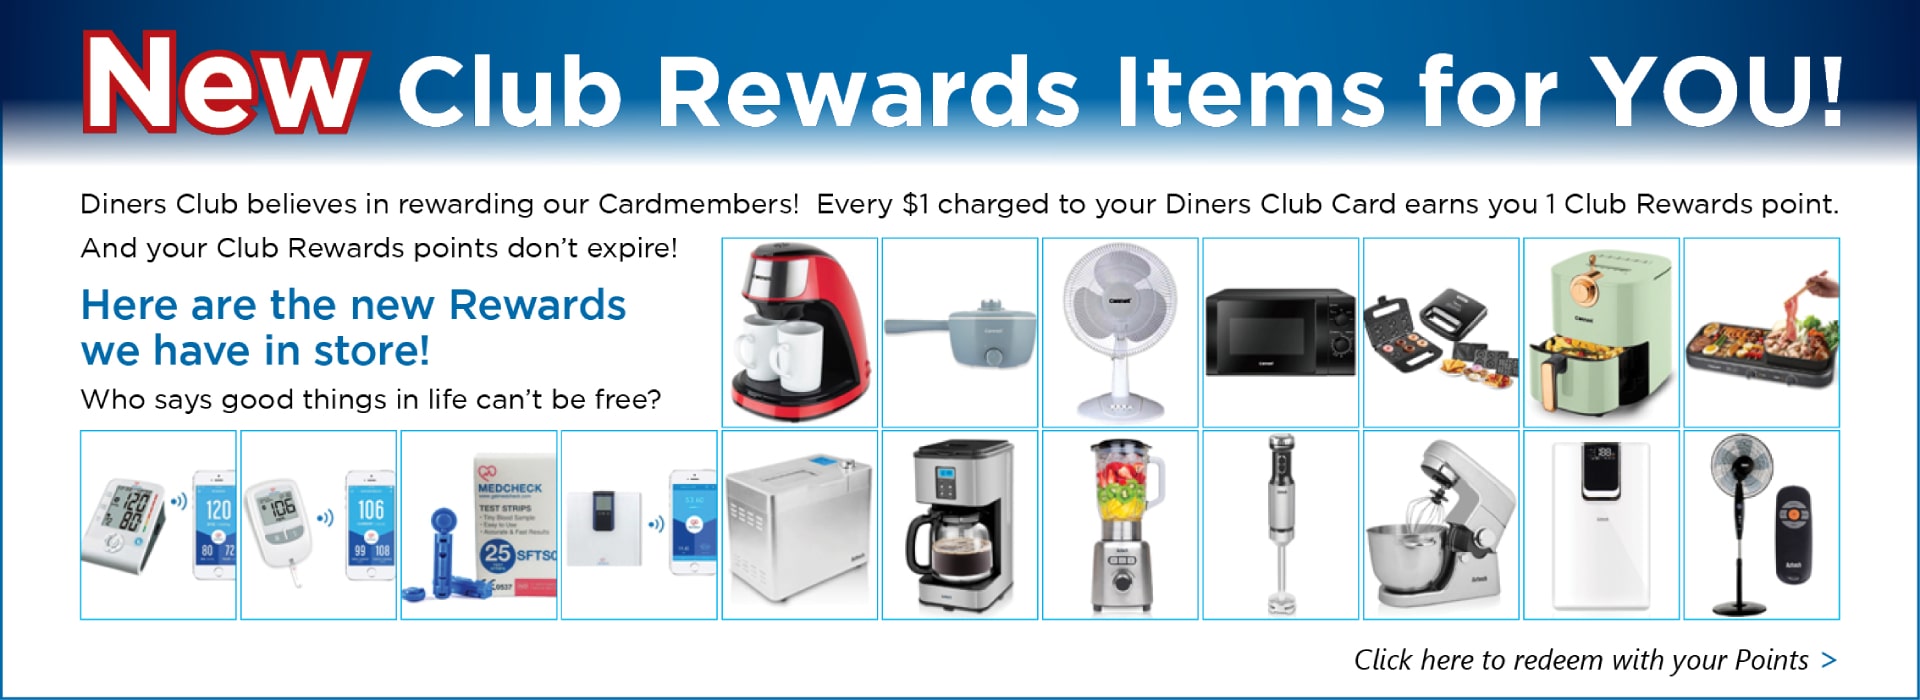 New Club Rewards Points Items